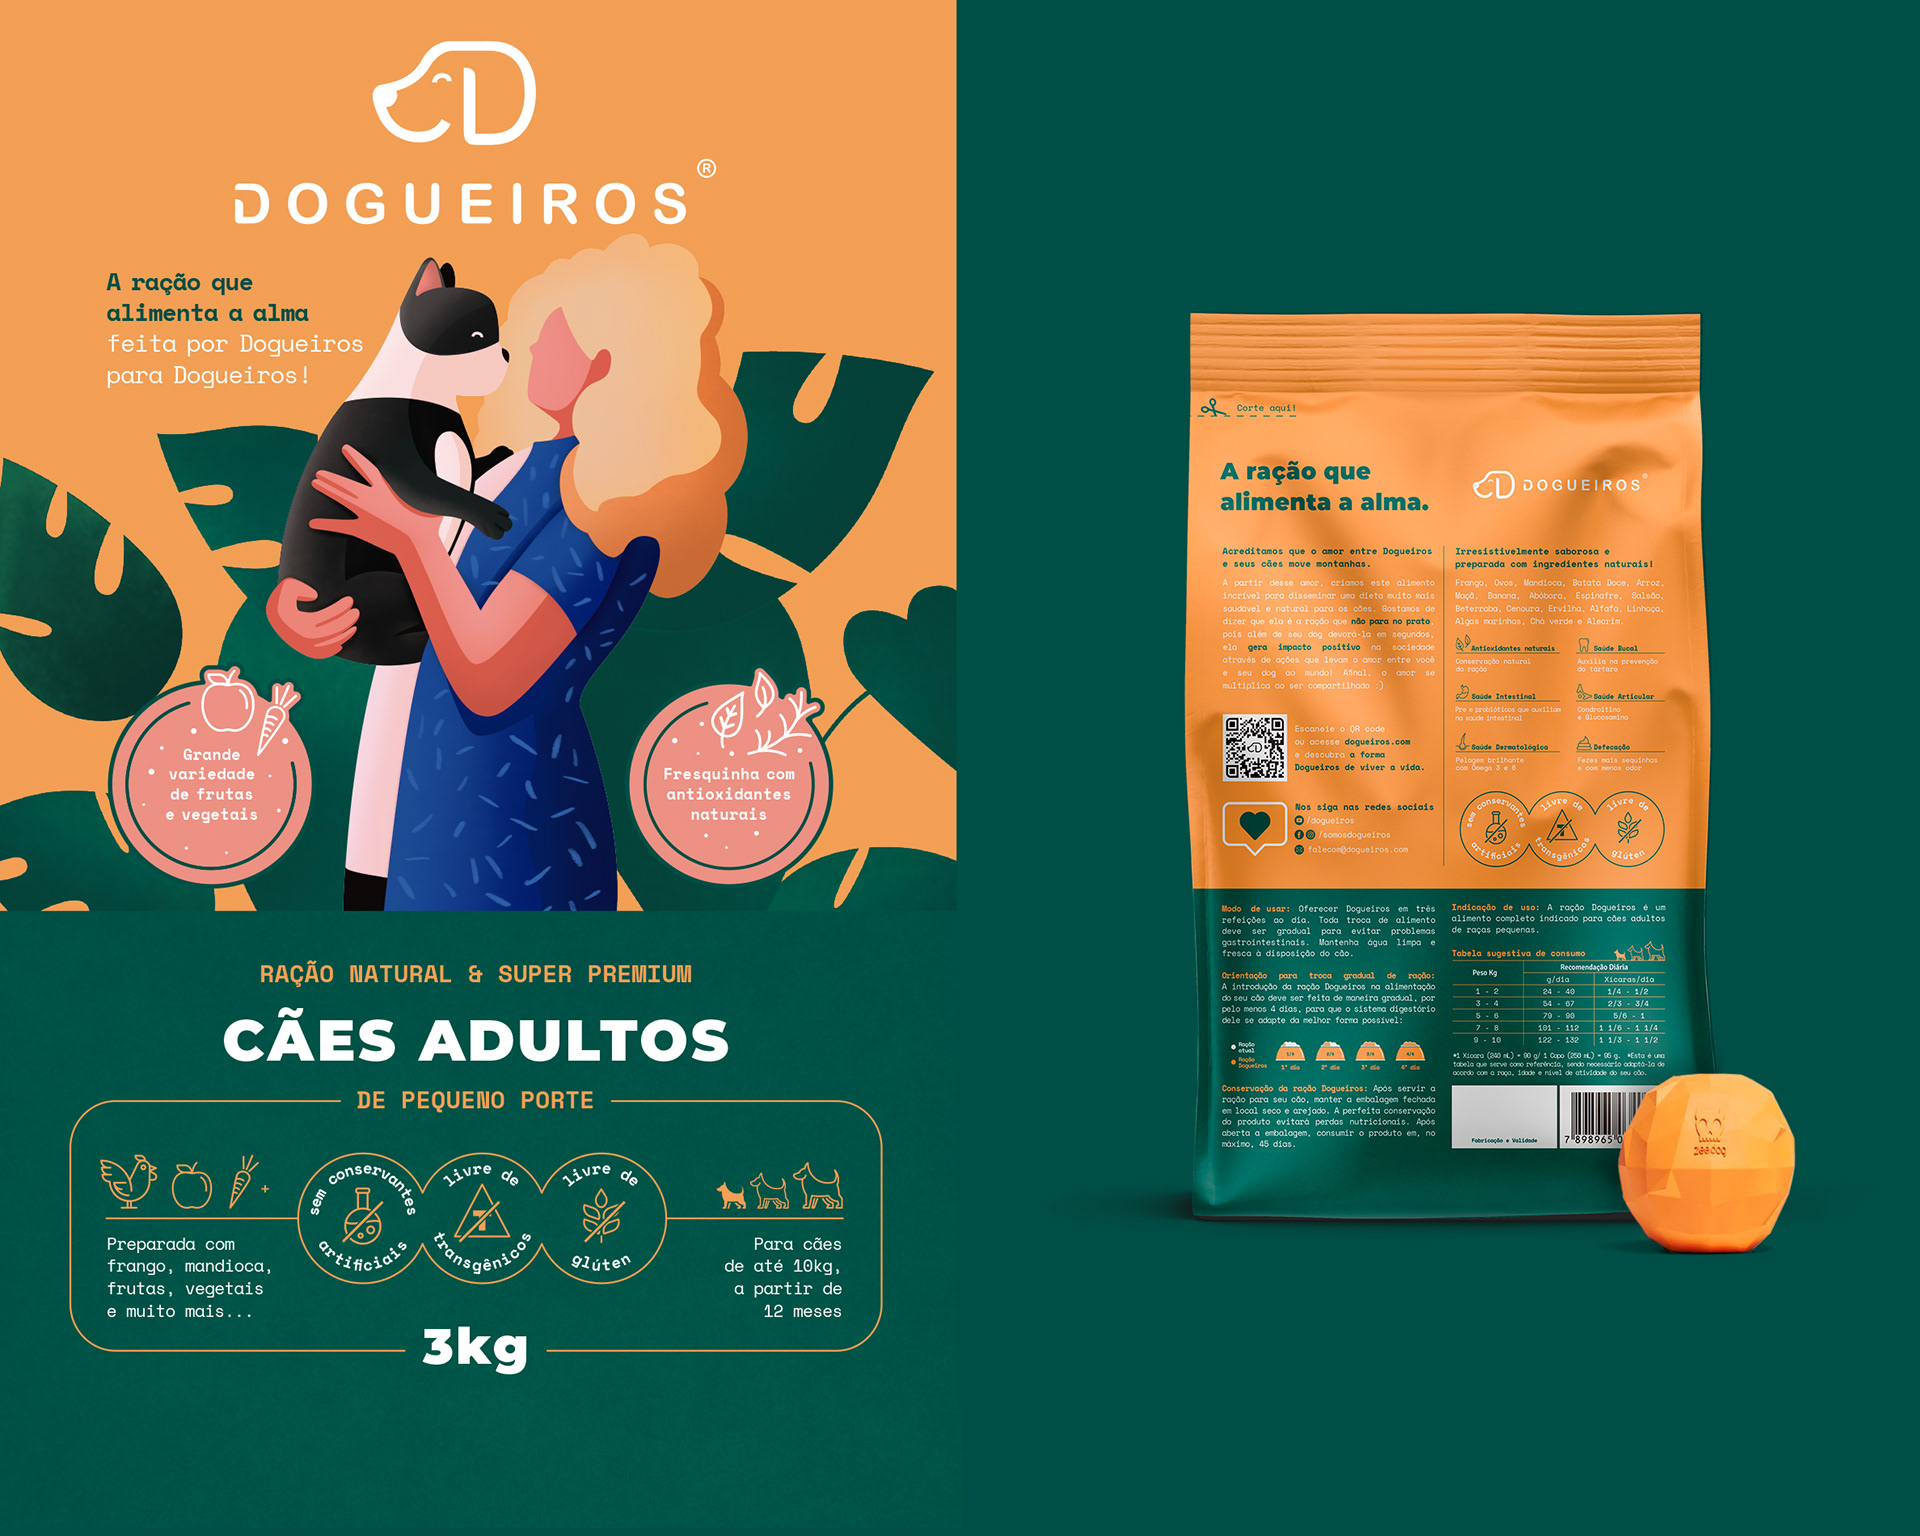 宠物食品包装设计 宠物食品包装设计图片 宠物食品包装设计理念 宠物食品包装设计公司 第9张